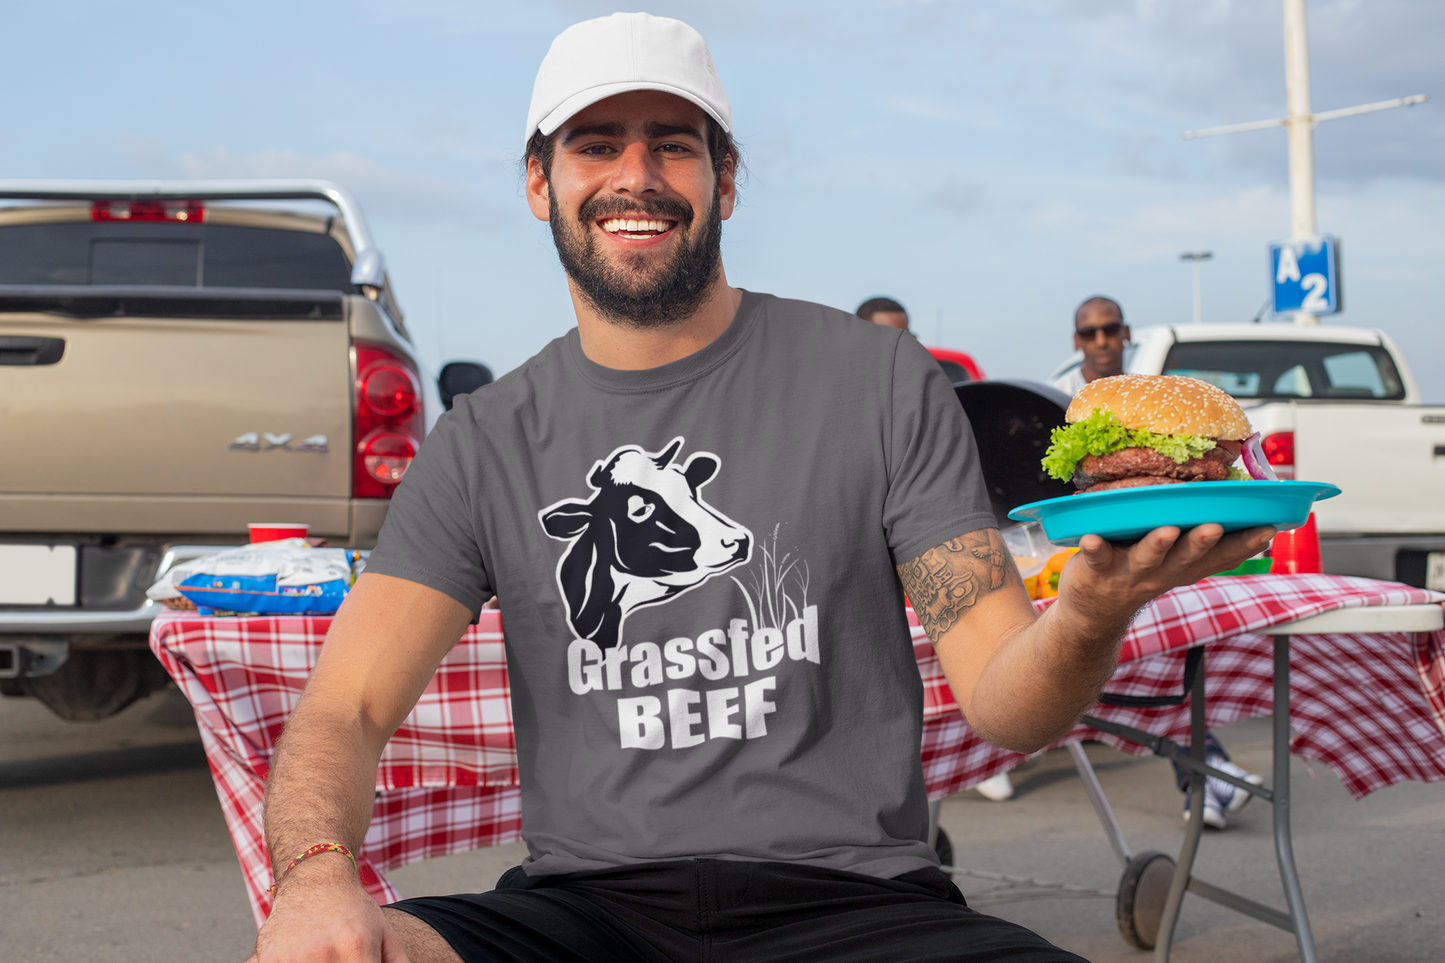 Grassfed beef T-shirt